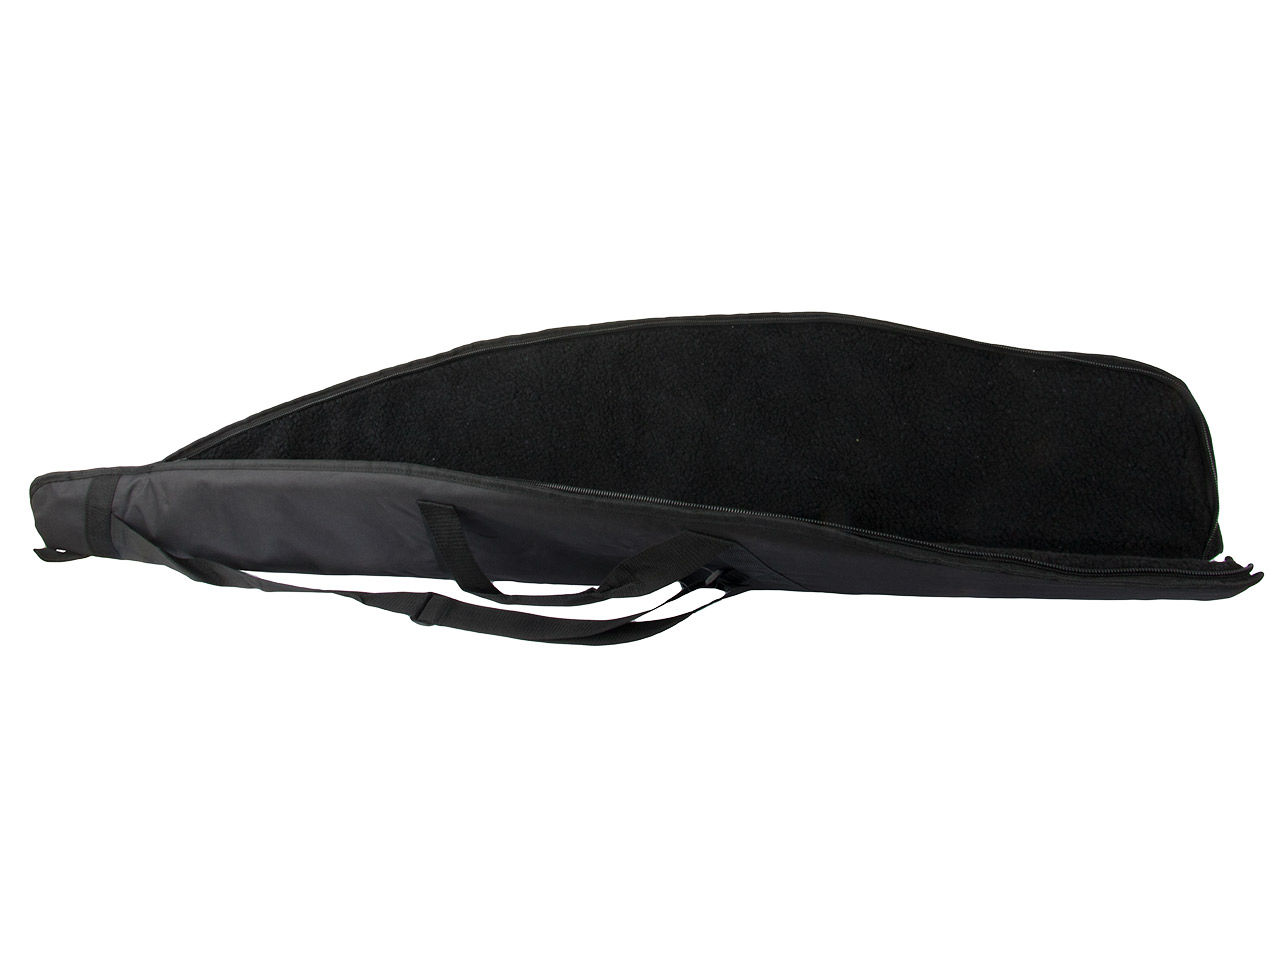 Gewehrfutteral Gewehrtasche Deluxe Bag Buffalo River 125 x 26 cm abschließbar Polyester Trageriemen Außentasche schwarz